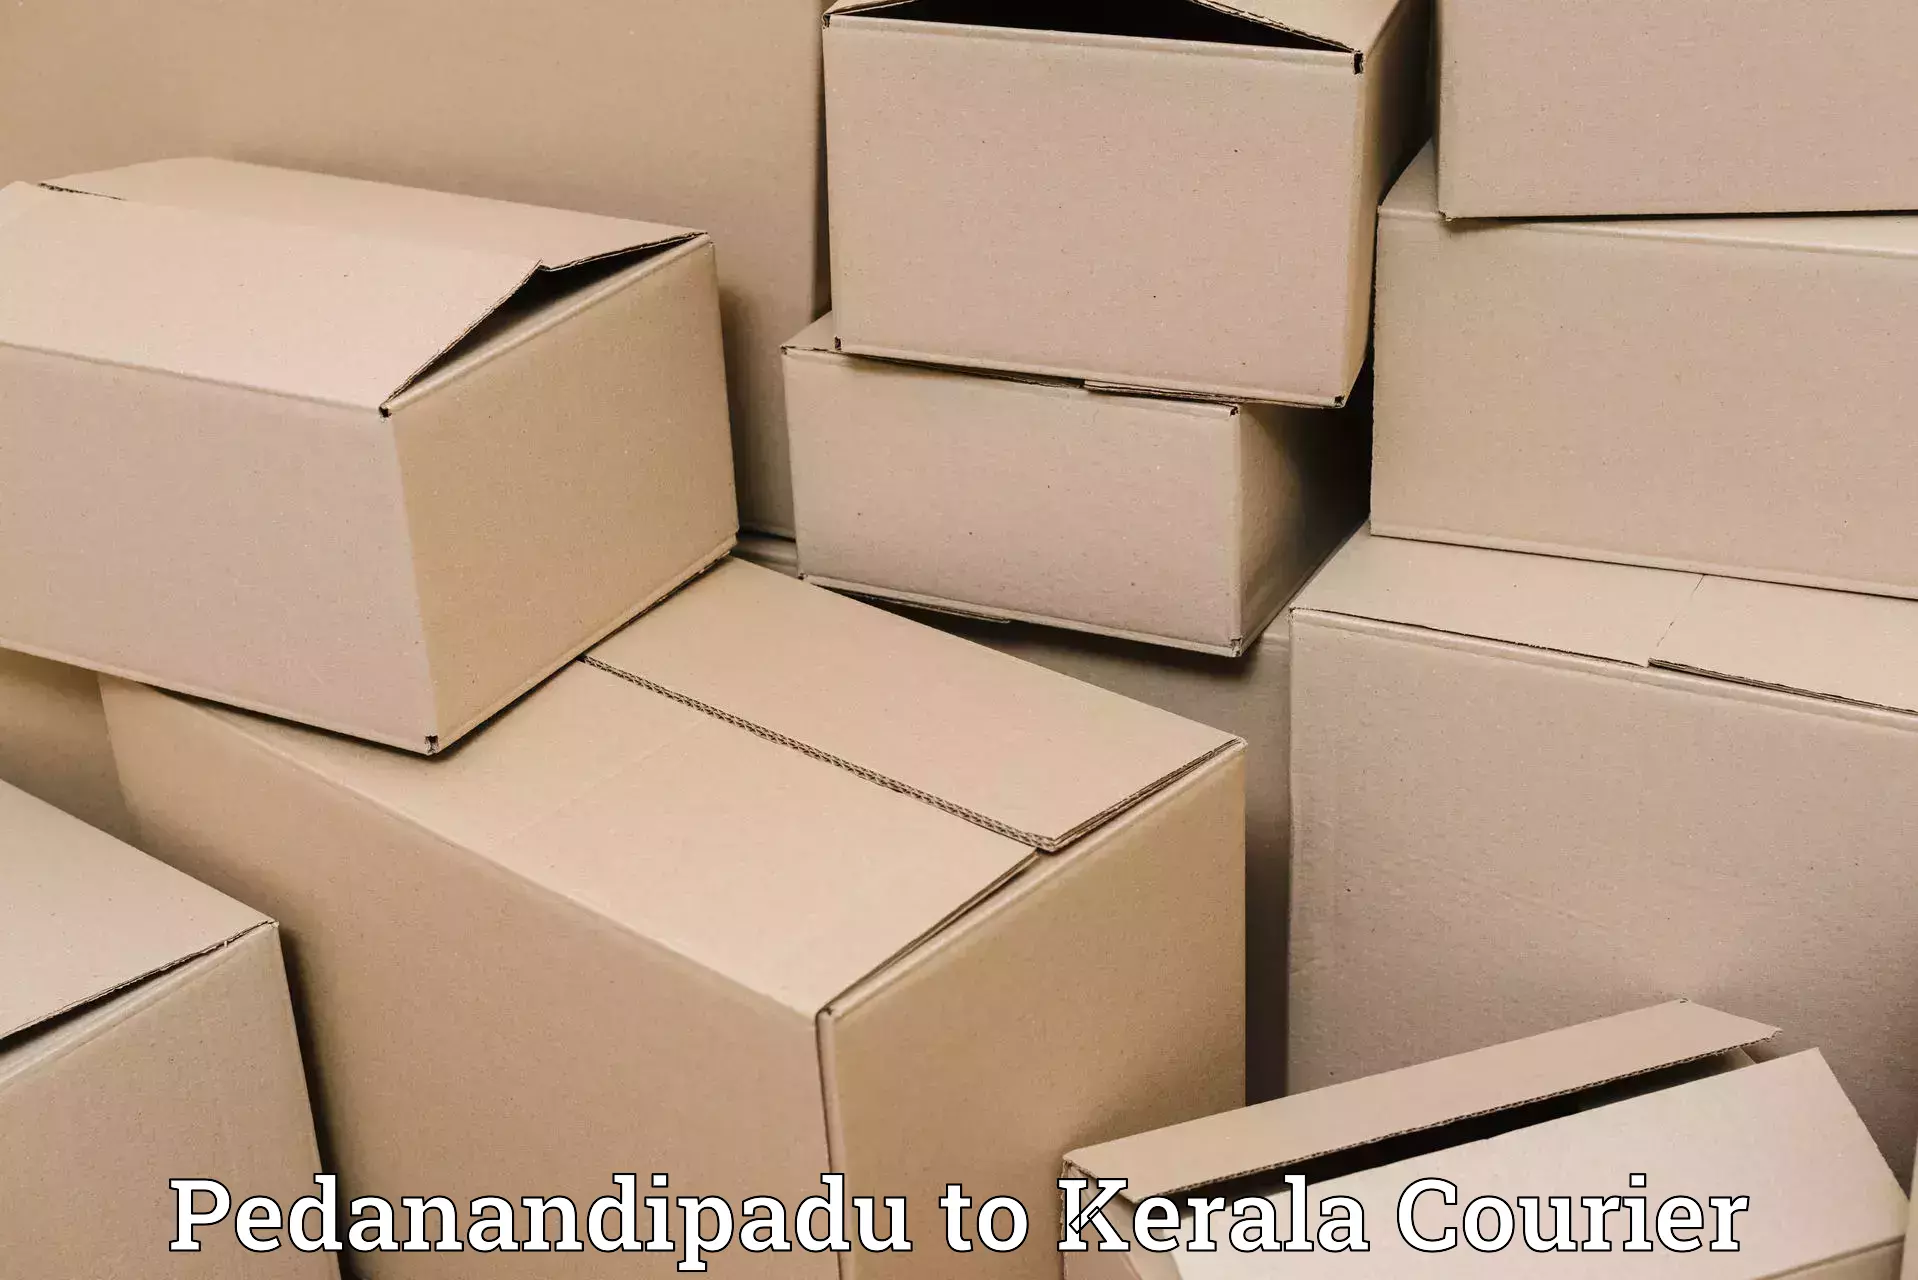 Global logistics network Pedanandipadu to Kayamkulam